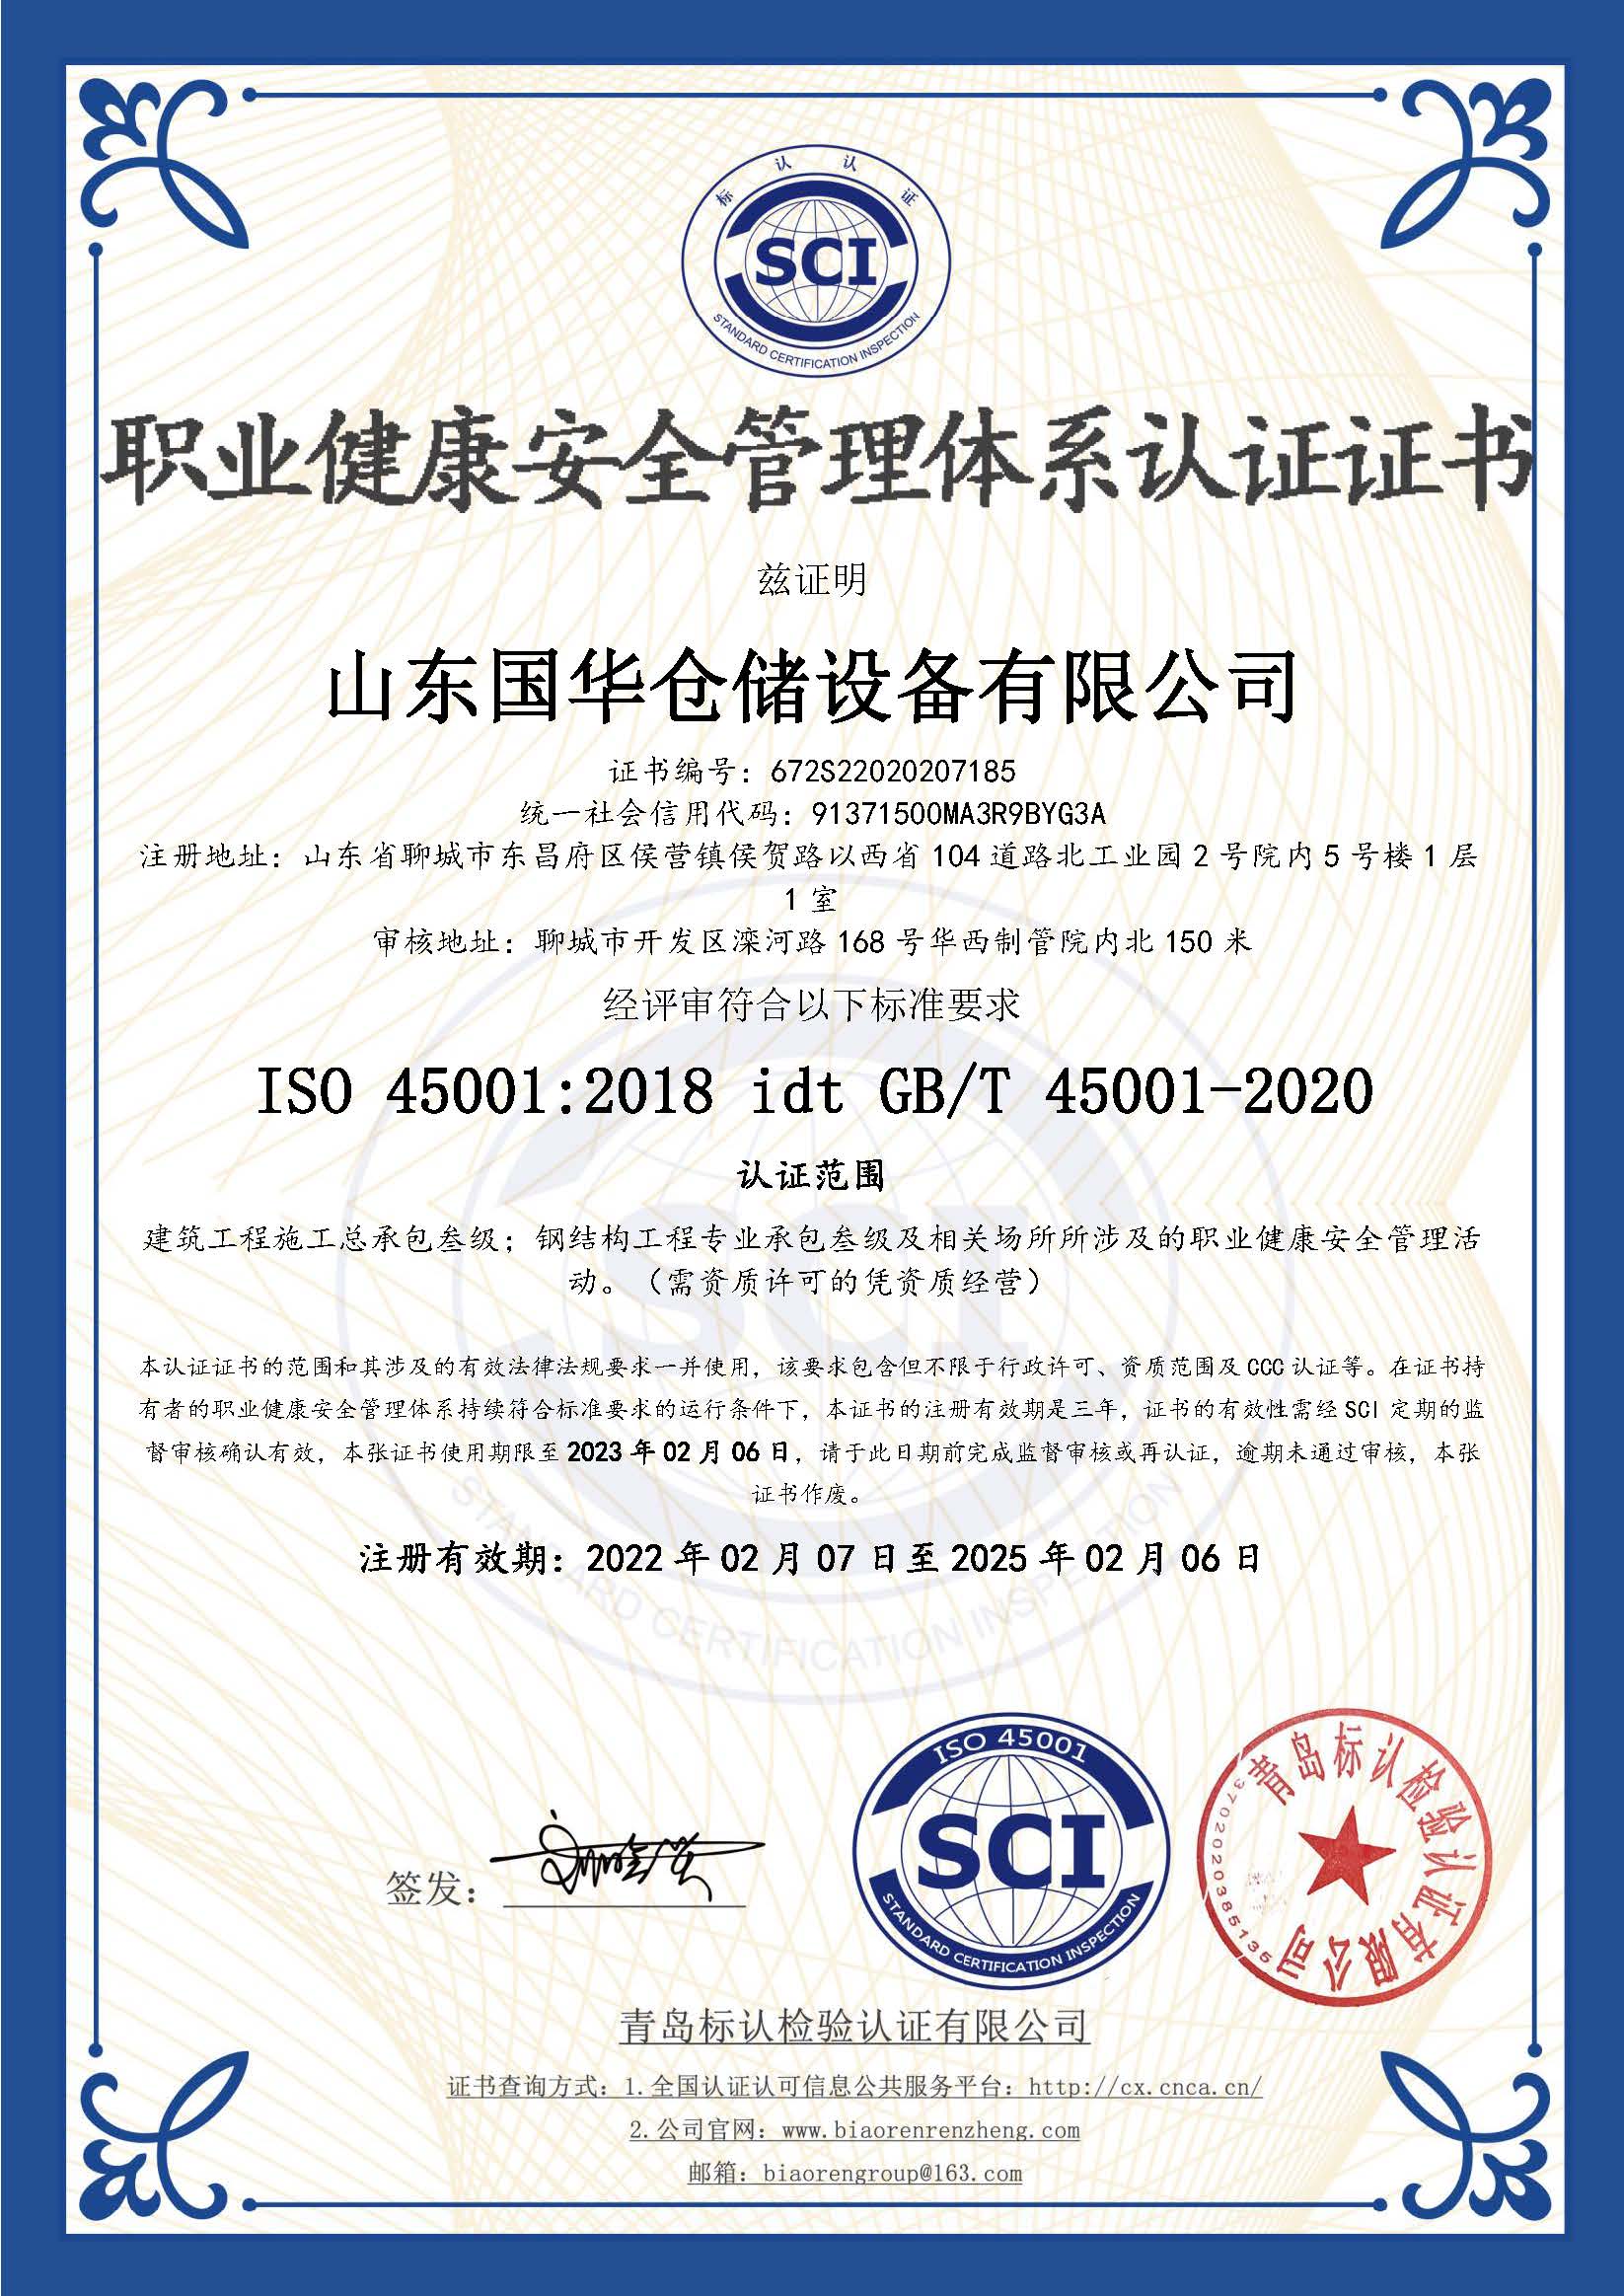 潮州钢板仓职业健康安全管理体系认证证书